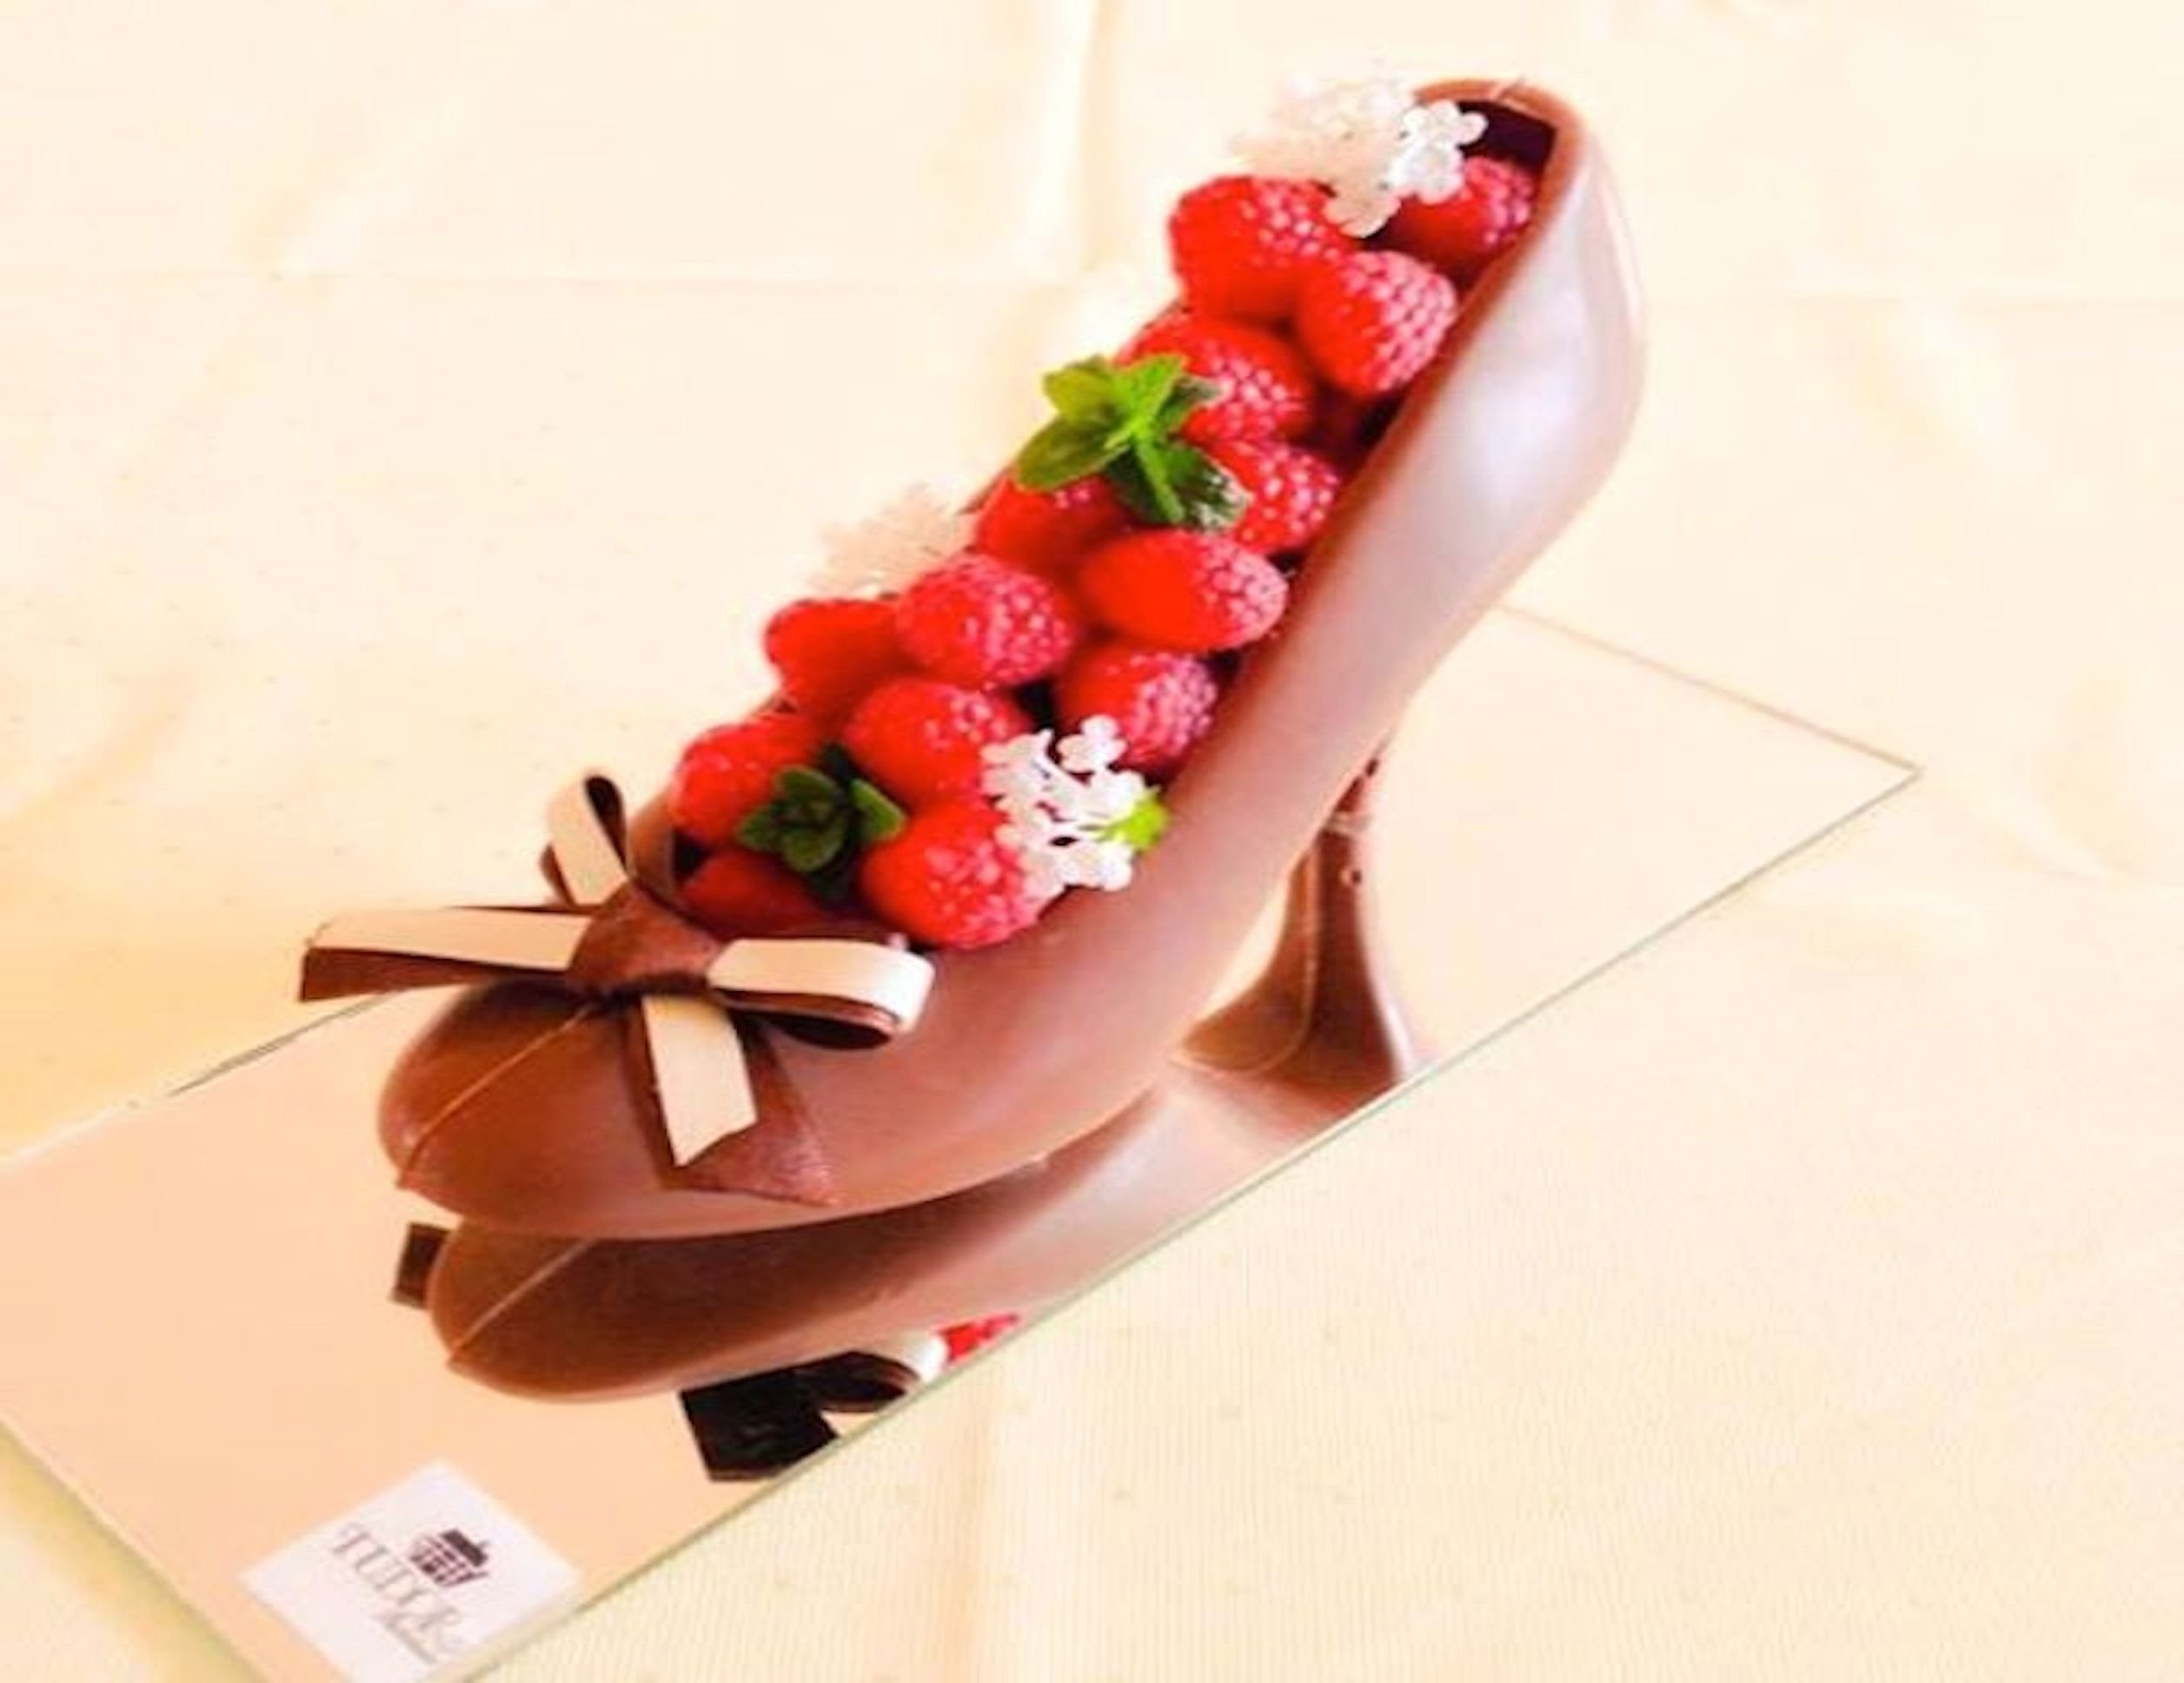 Repostería: Zapatilla de chocolate. Cómo hacer figuras de chocolate